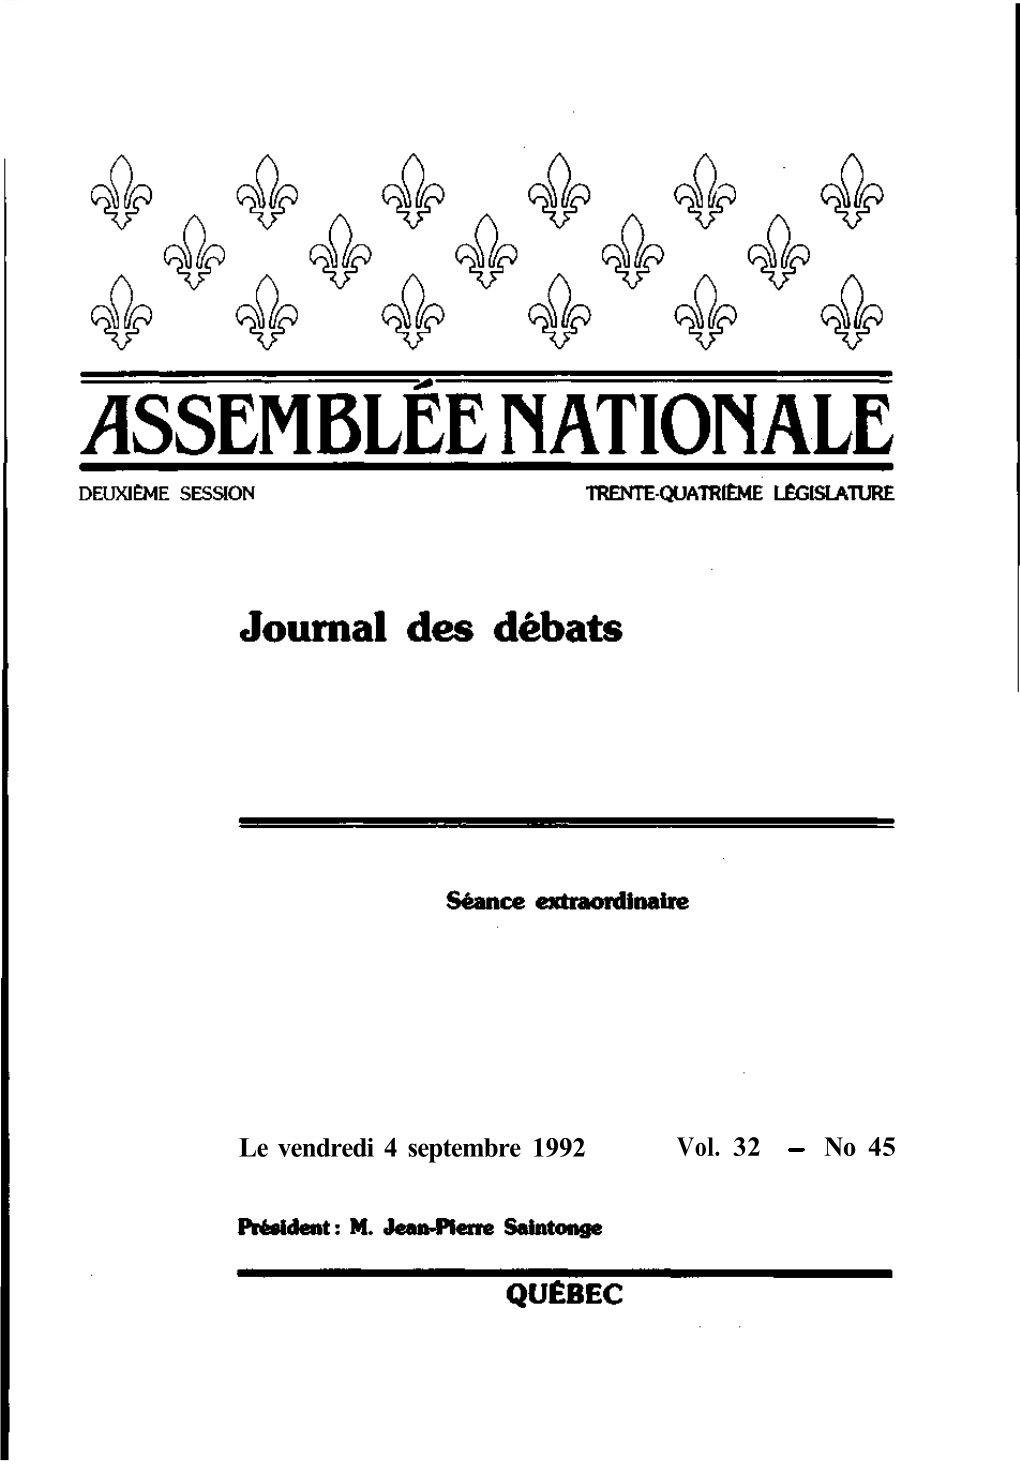 No 45 Débats De L'assemblée Nationale